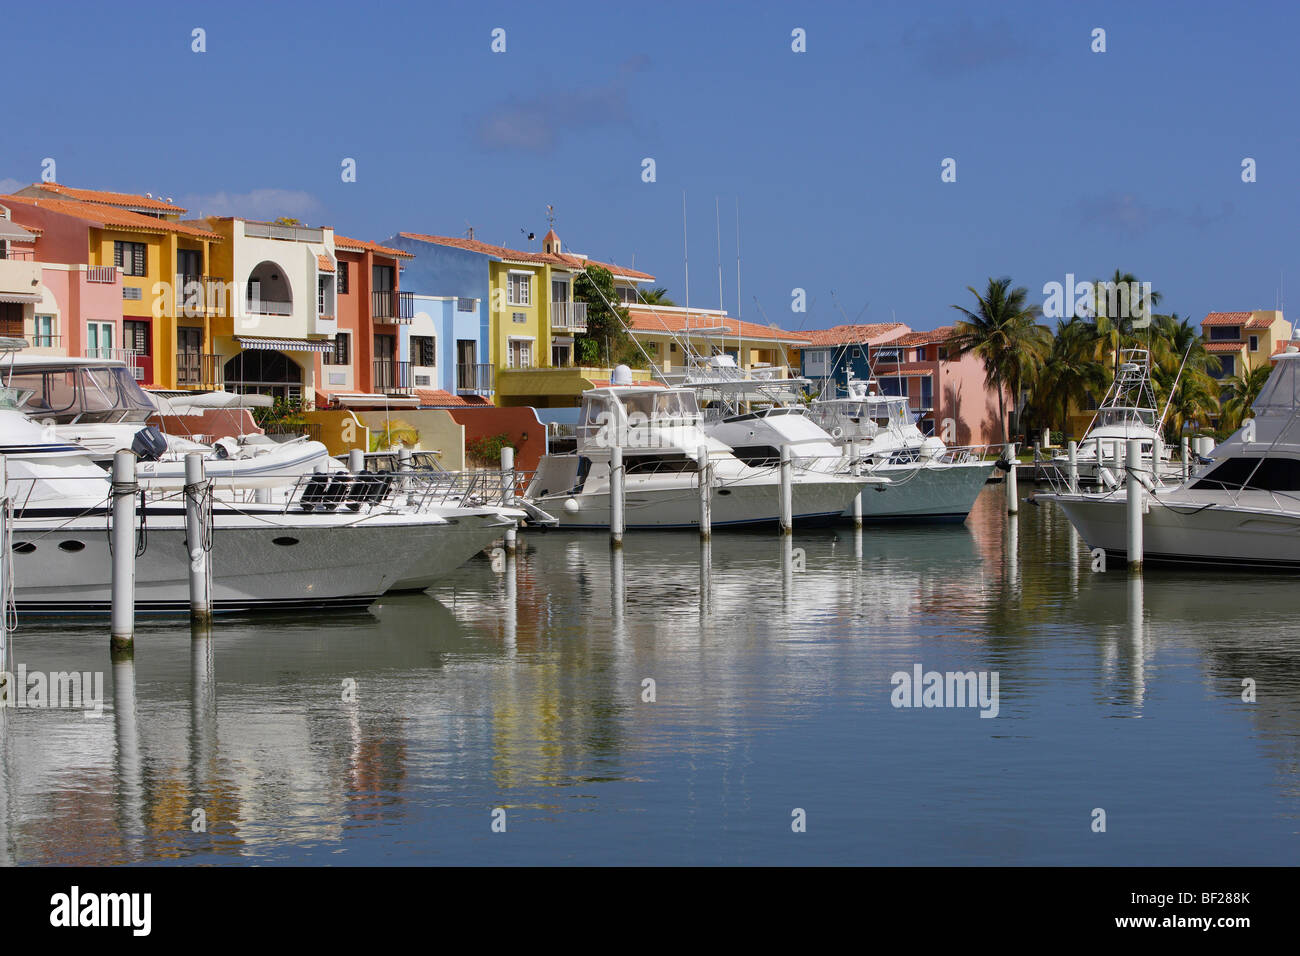 Le barche sono ormeggiate presso Palmas del Mar porto nella parte anteriore del case colorate, Palmas del Mar, Puerto Rico, America Foto Stock